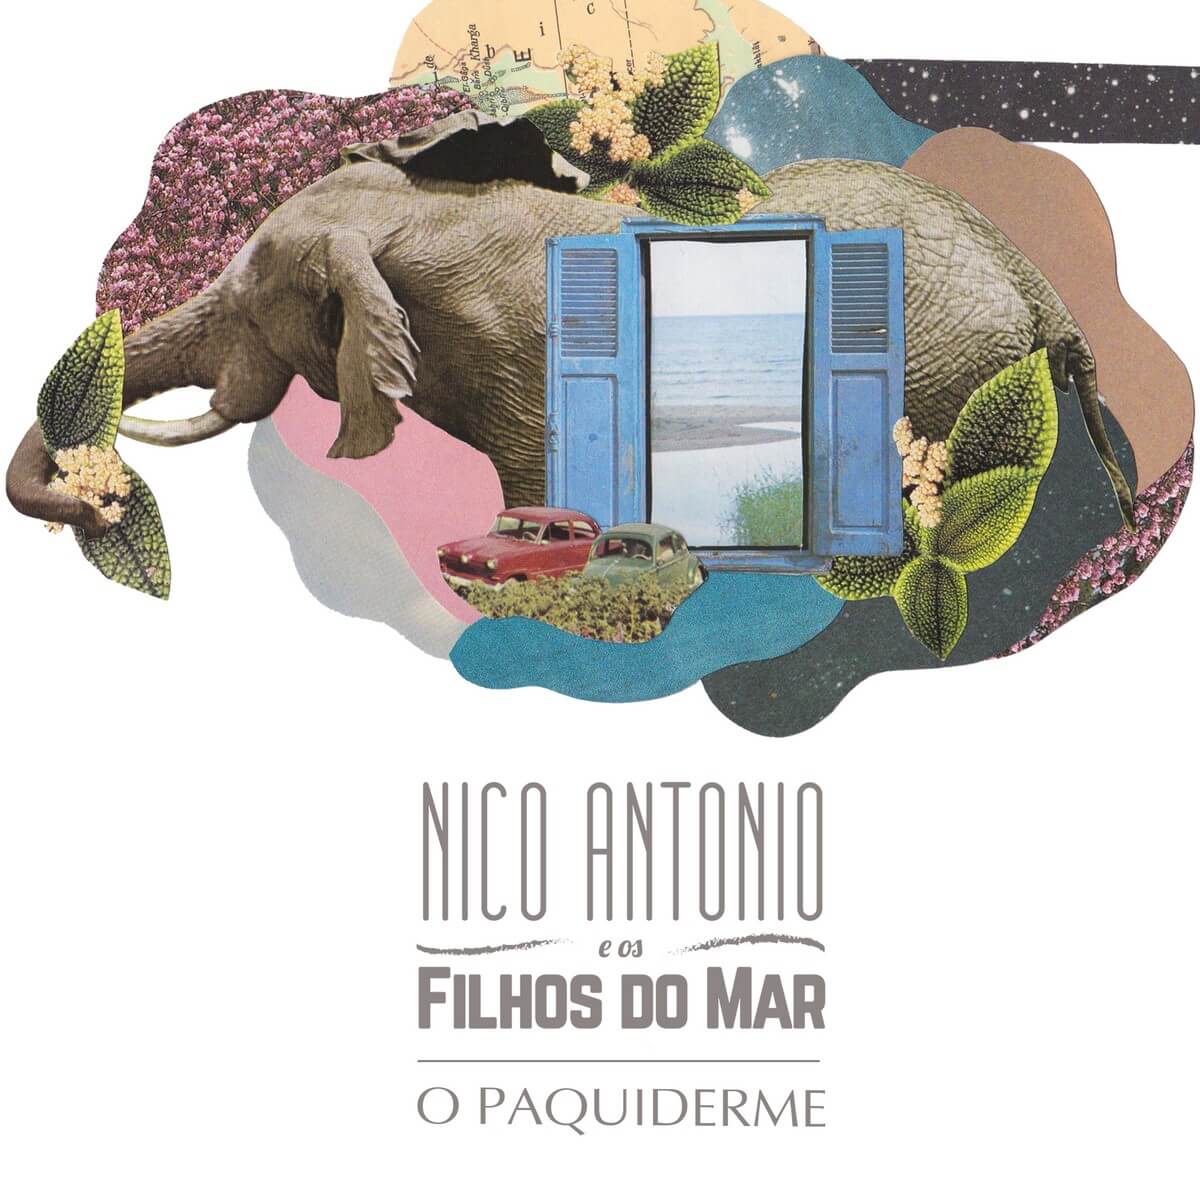 Álbum de estreia “O Paquiderme”, do grupo Nico Antonio e os Filhos do Mar. Divulgação.